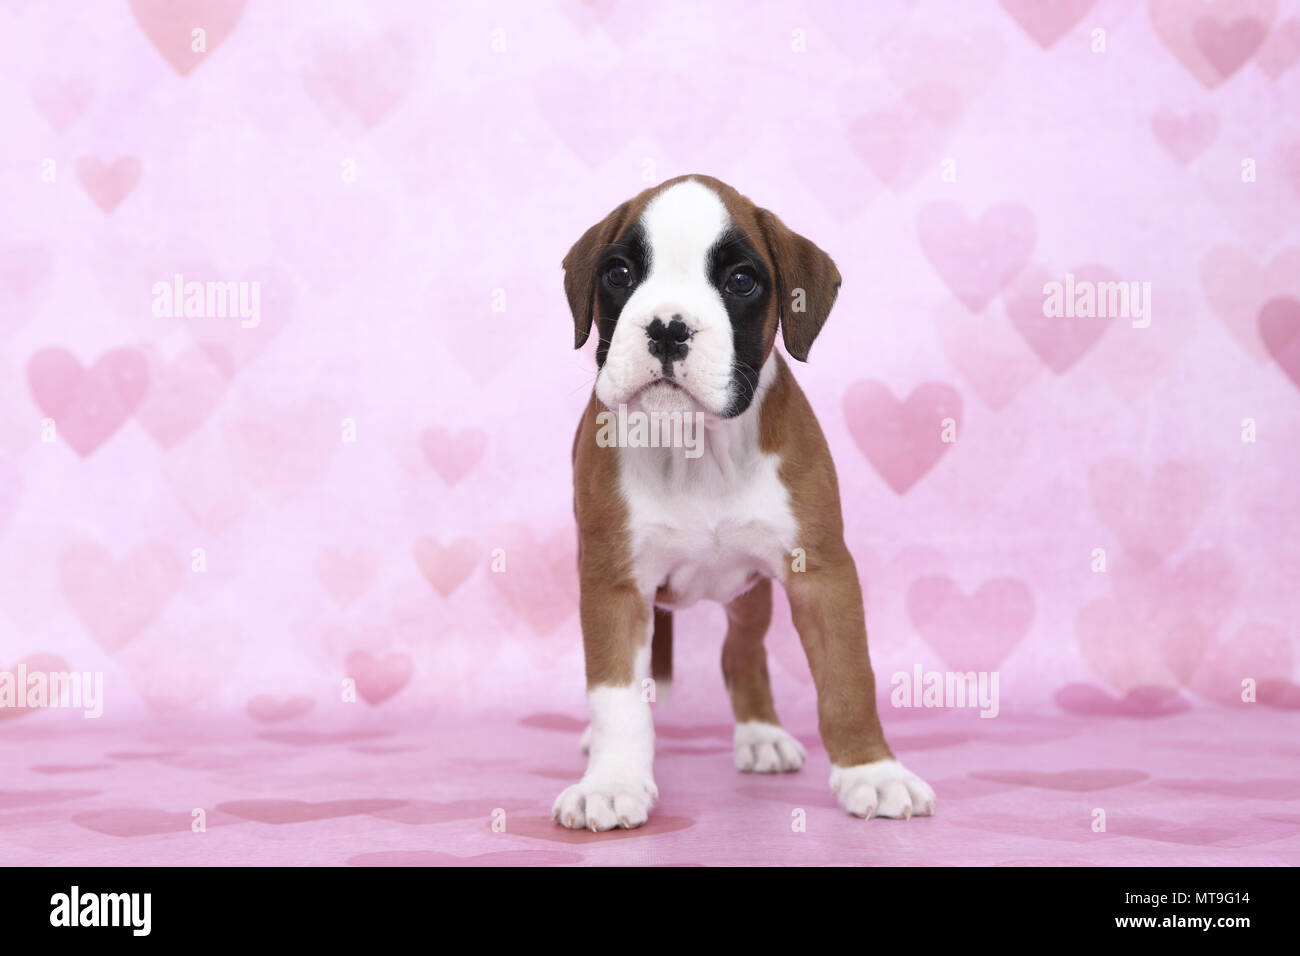 Boxeur allemand. Puppy (7 semaines). Studio photo sur un fond rose avec coeur imprimer. Allemagne Banque D'Images